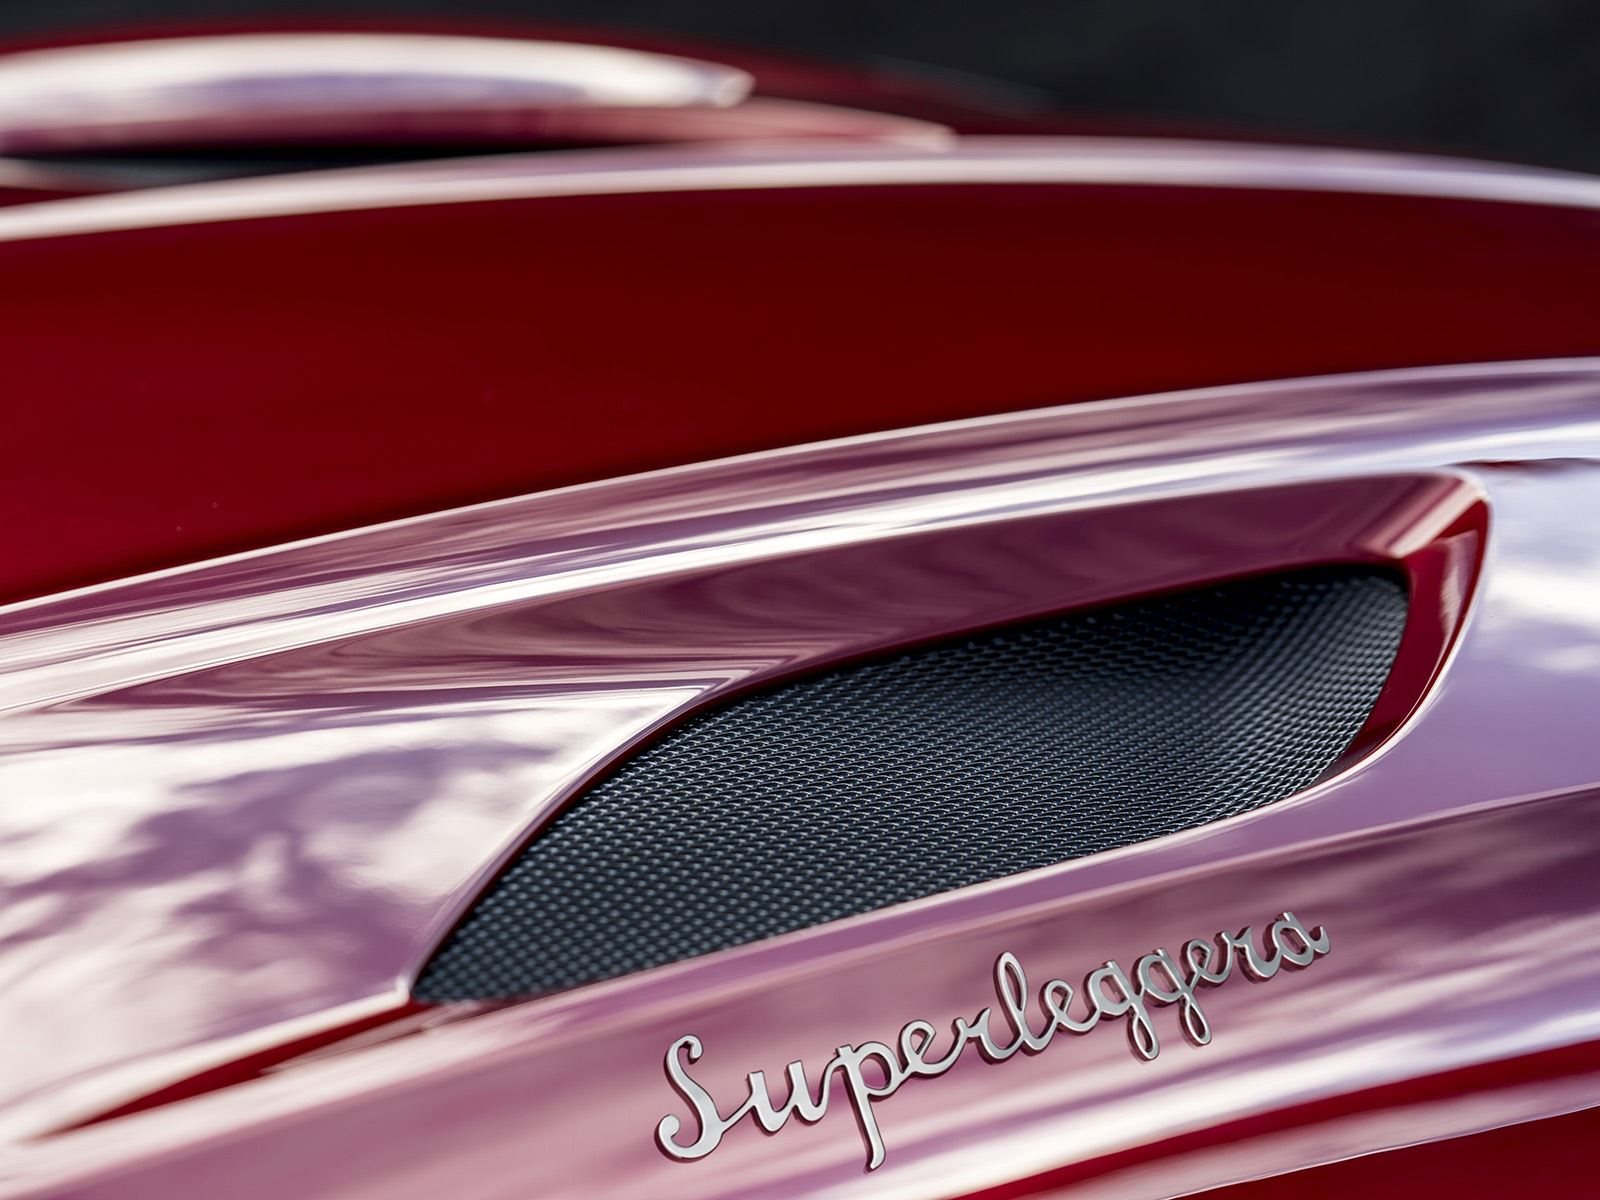 Использование названия Superleggera, которое с итальянского означает «супер-свет», также намекает на экстремальные возможности автомобиля и напоминает об оригинальном DBS 1967 года.